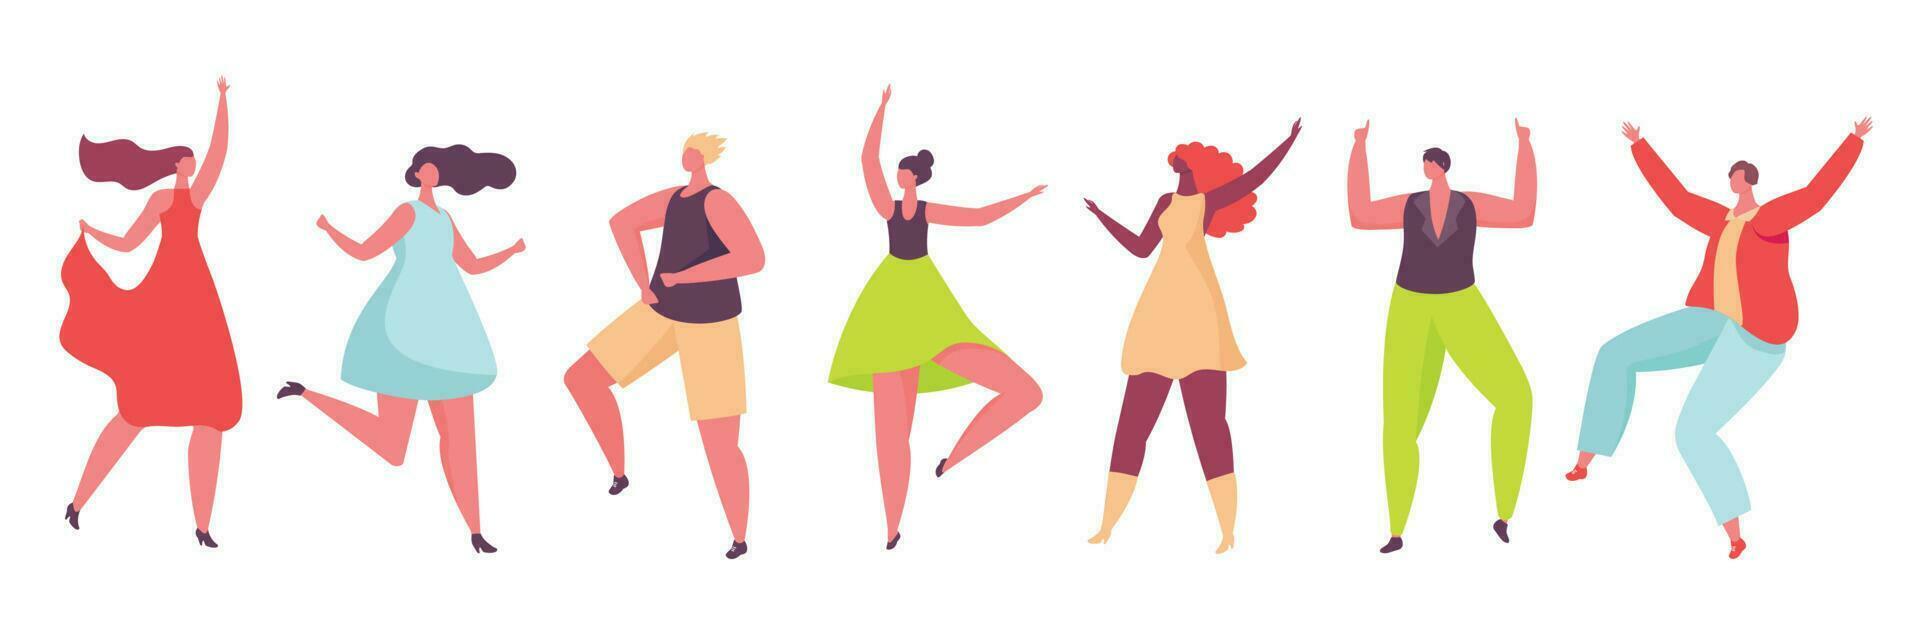 Tanzen Figuren, jung Menschen tanzen beim Party oder Verein. freunde haben Spaß und feiern zusammen, Männer und Frauen Tänzer Vektor einstellen